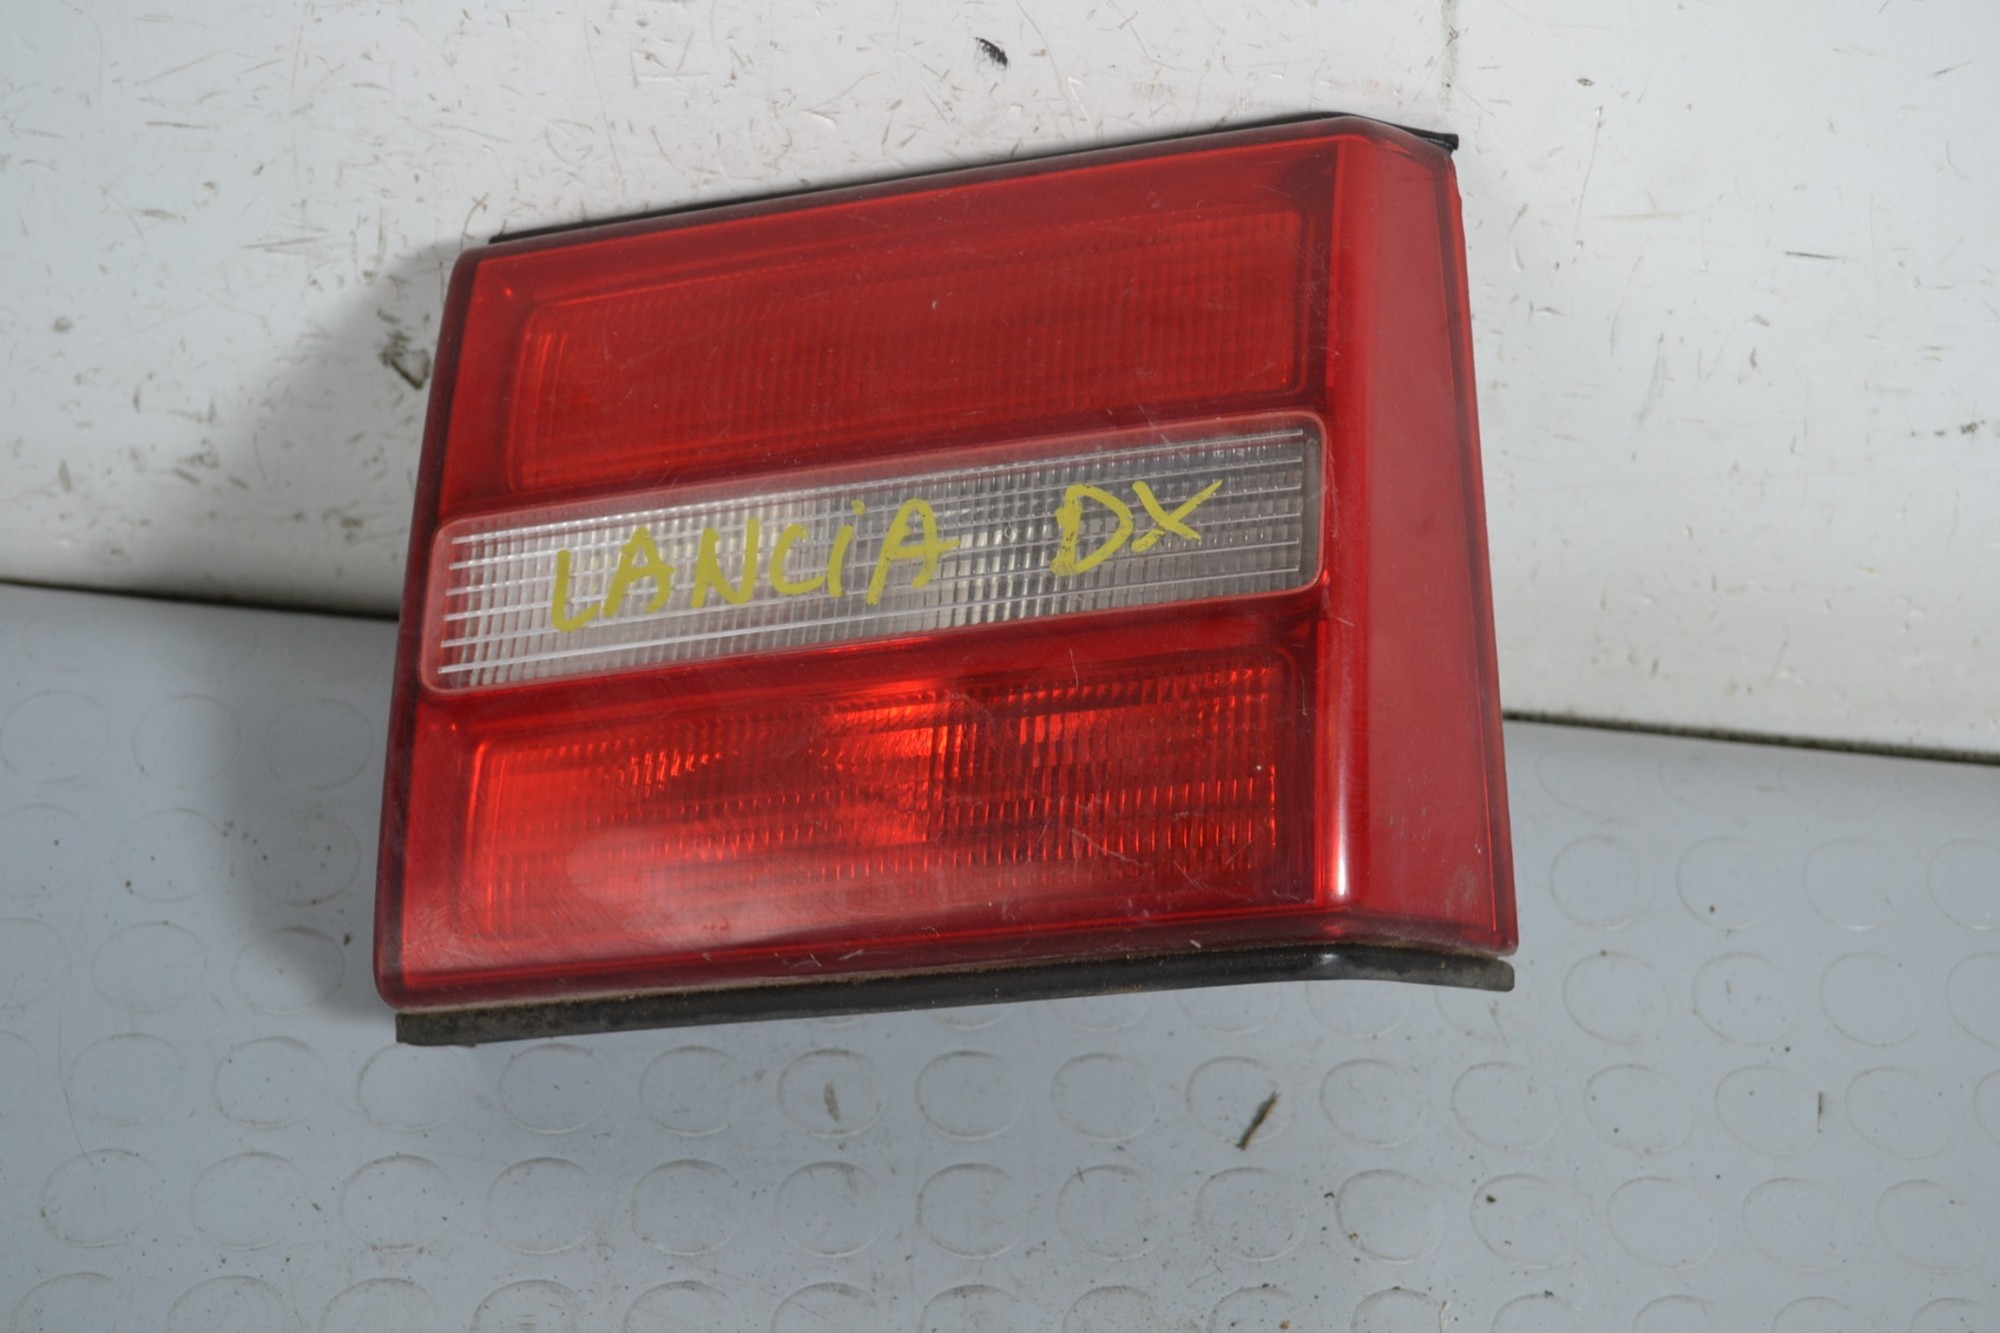 Fanale Stop Posteriore Interno DX Lancia Kappa dal 1994 al 2001 Cod 7780140  1648450265557